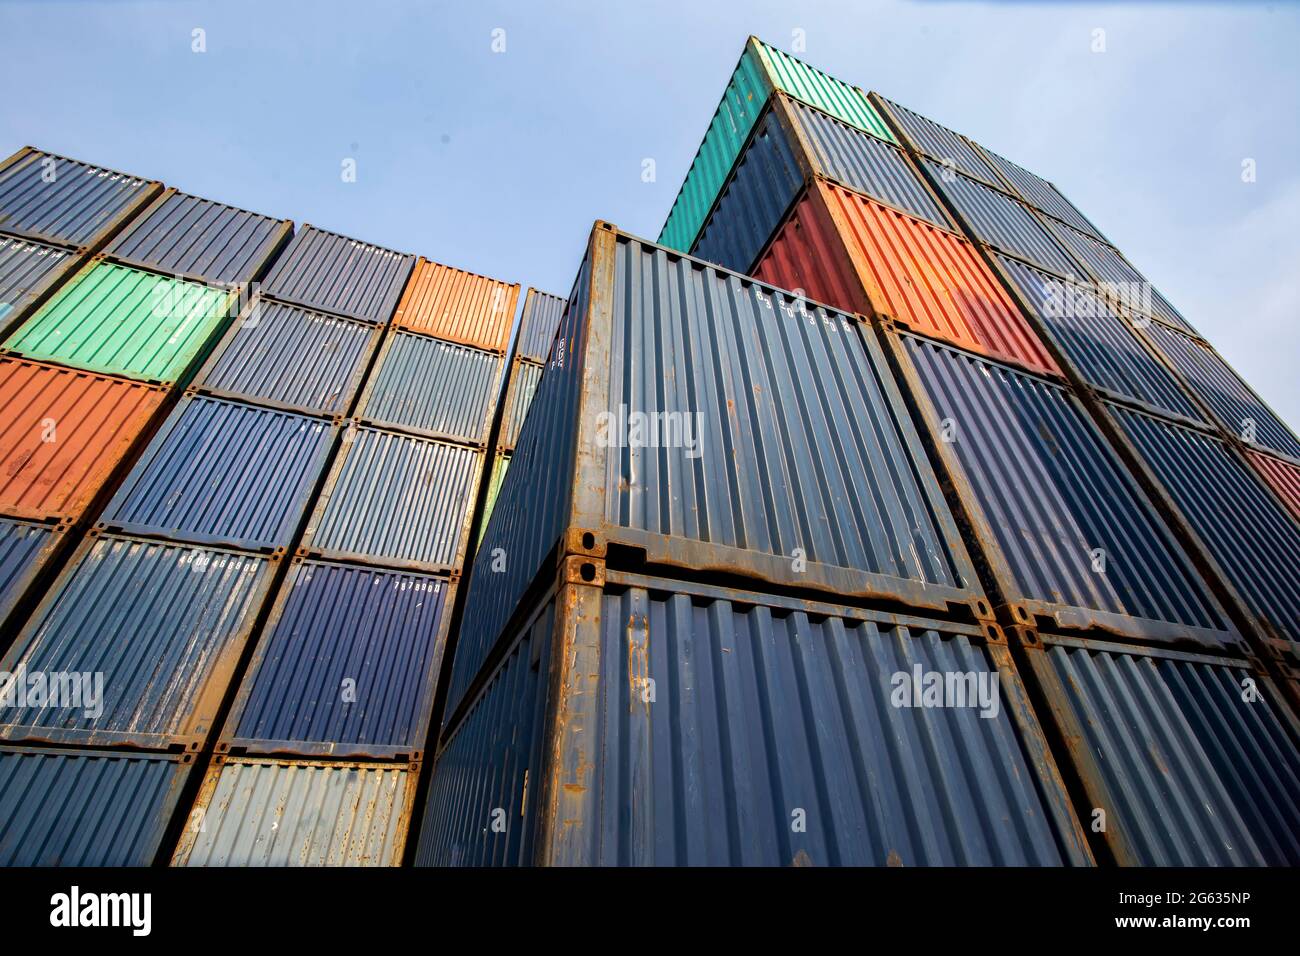 Container Cargo Port Ship Yard Storage movimentazione del settore dei trasporti logistici. Fila di contenitori impilati di importazione/esportazione merci Foto Stock